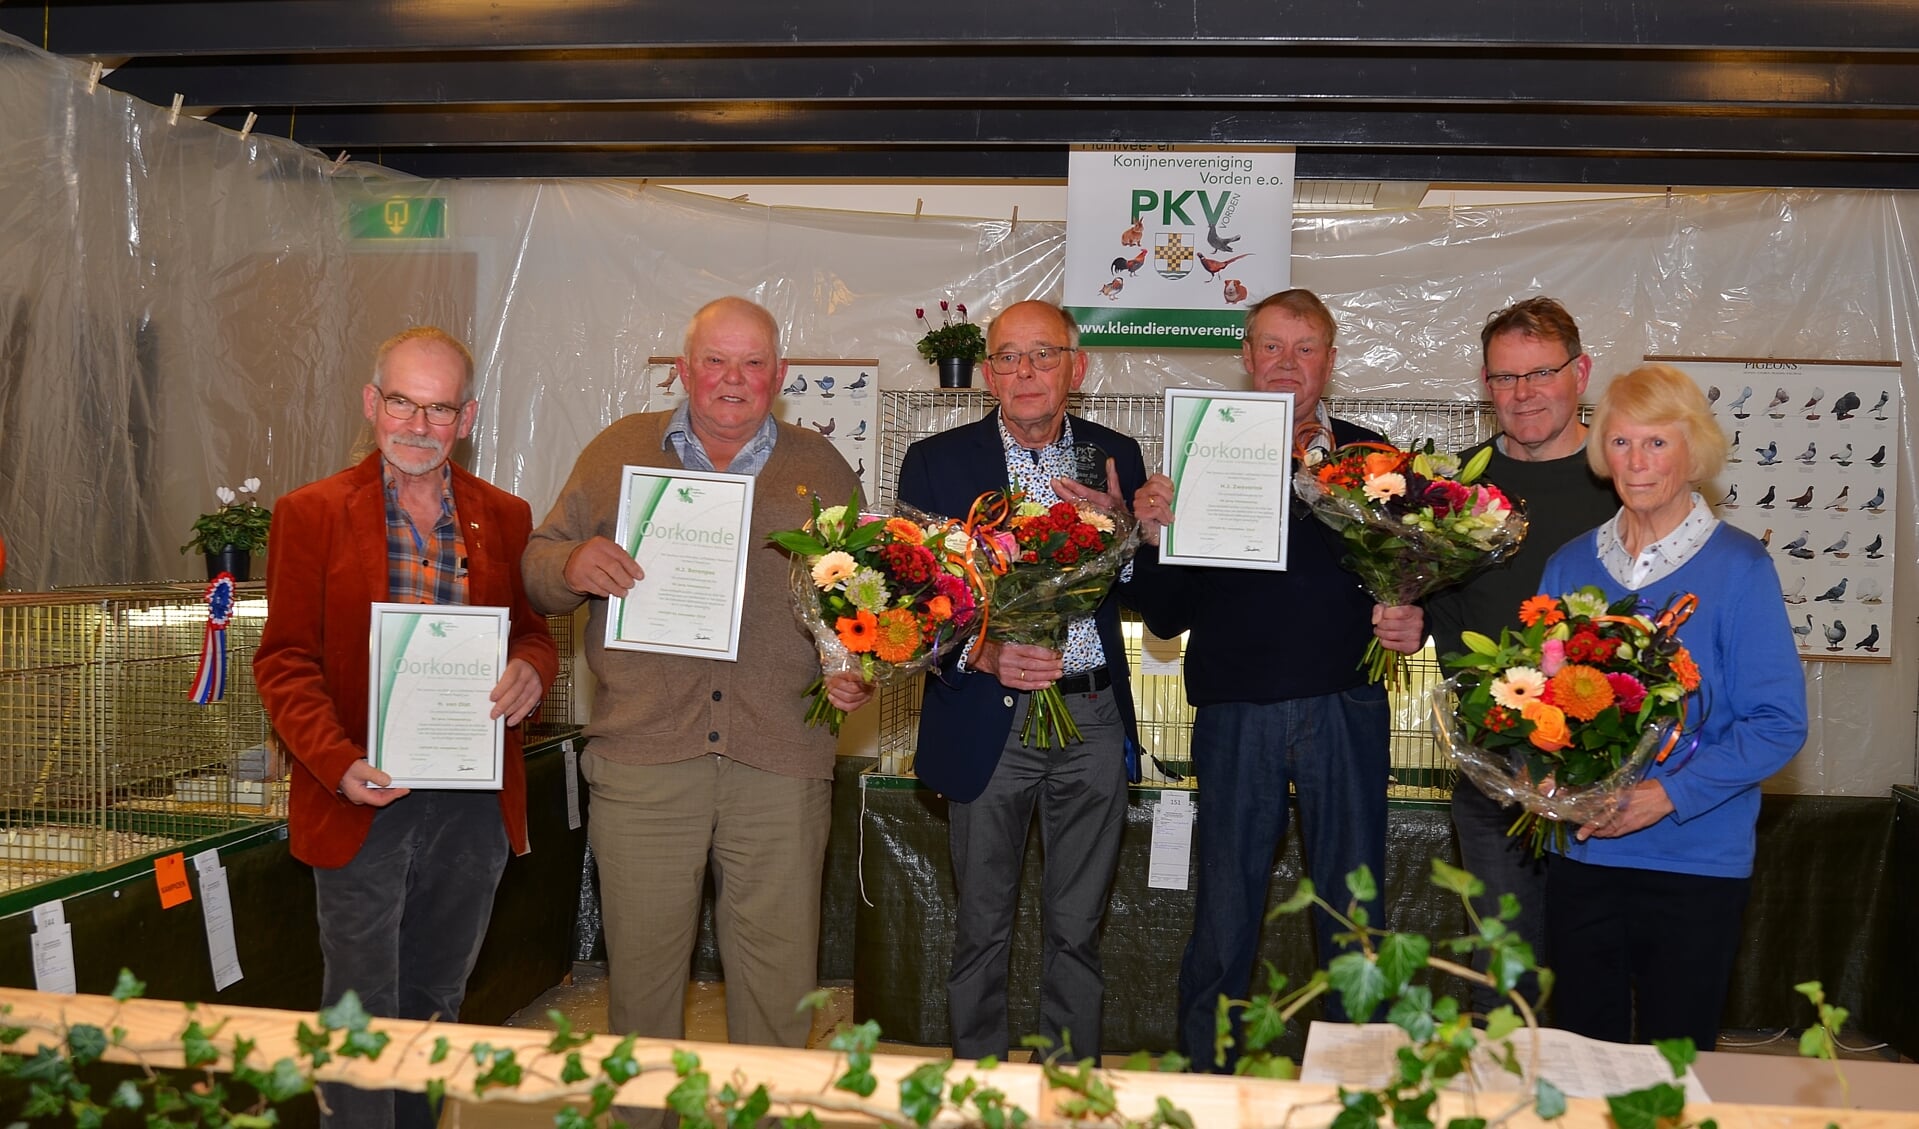 Voorzitter Jan Dirk Nijkamp (tweede van rechts) met de vijf jubilarissen: Foto: Johan Braakman